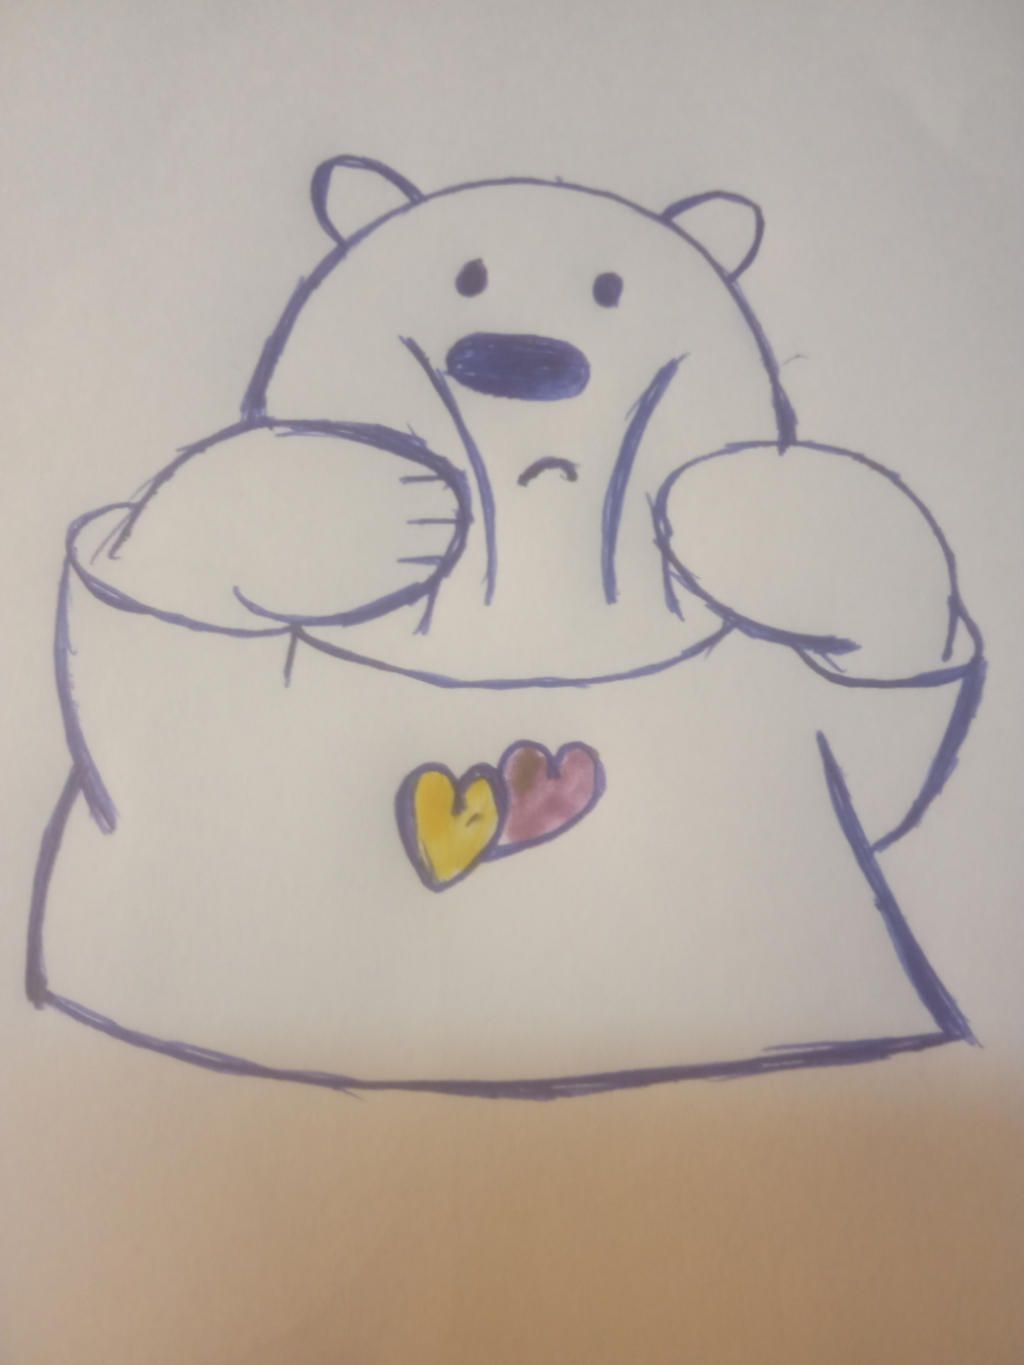 Xem hơn 100 ảnh về hình vẽ gấu pooh dễ thương  NEC